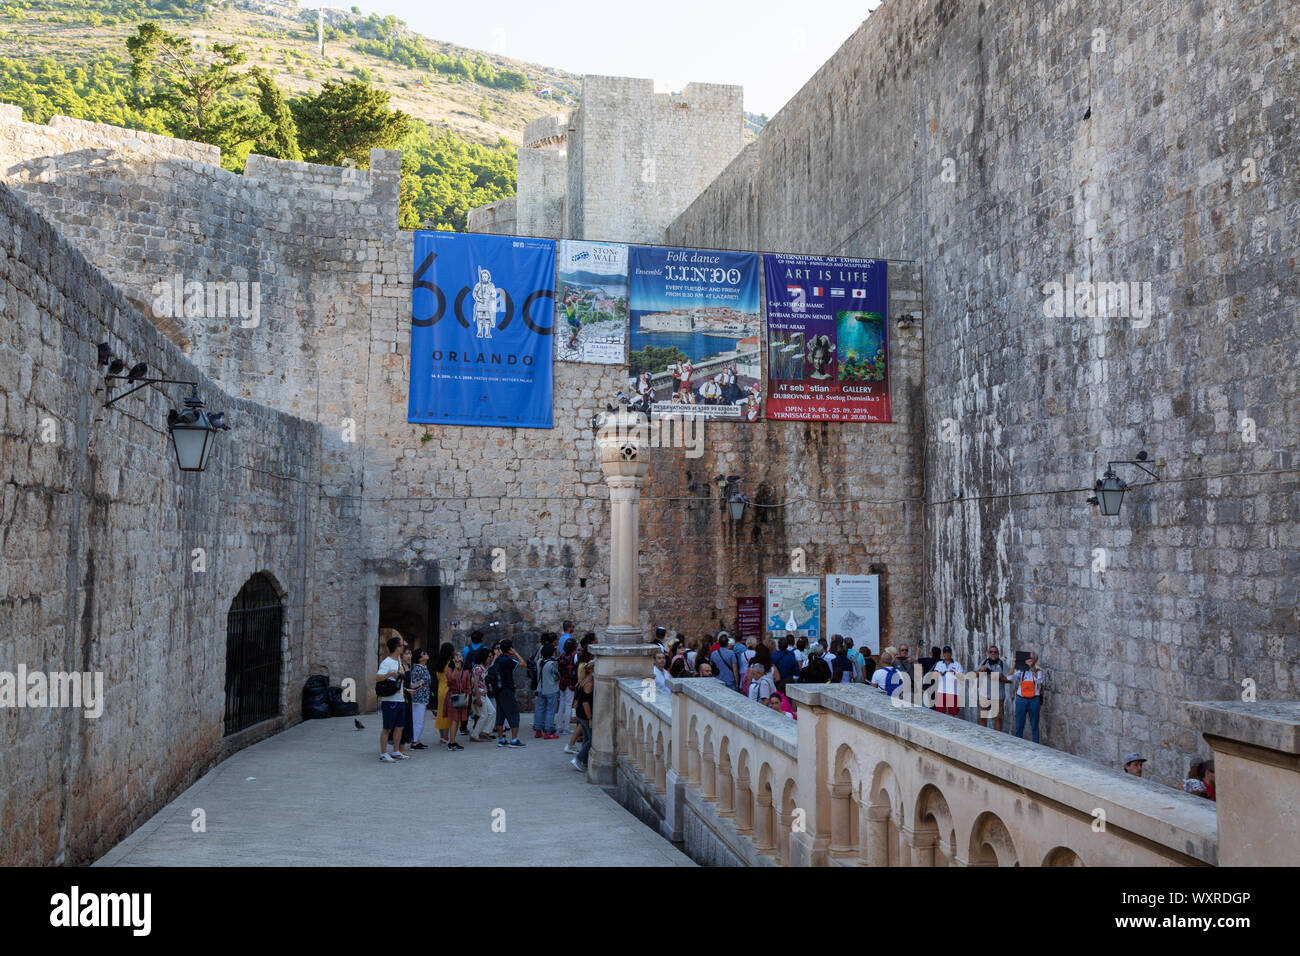 Dubrovnik pila gate - turisti entrare Dunbrovnik vecchia città del patrimonio mondiale UNESCO attraverso il palo porta nelle mura della città di Dubrovnik, Croazia Europa Foto Stock